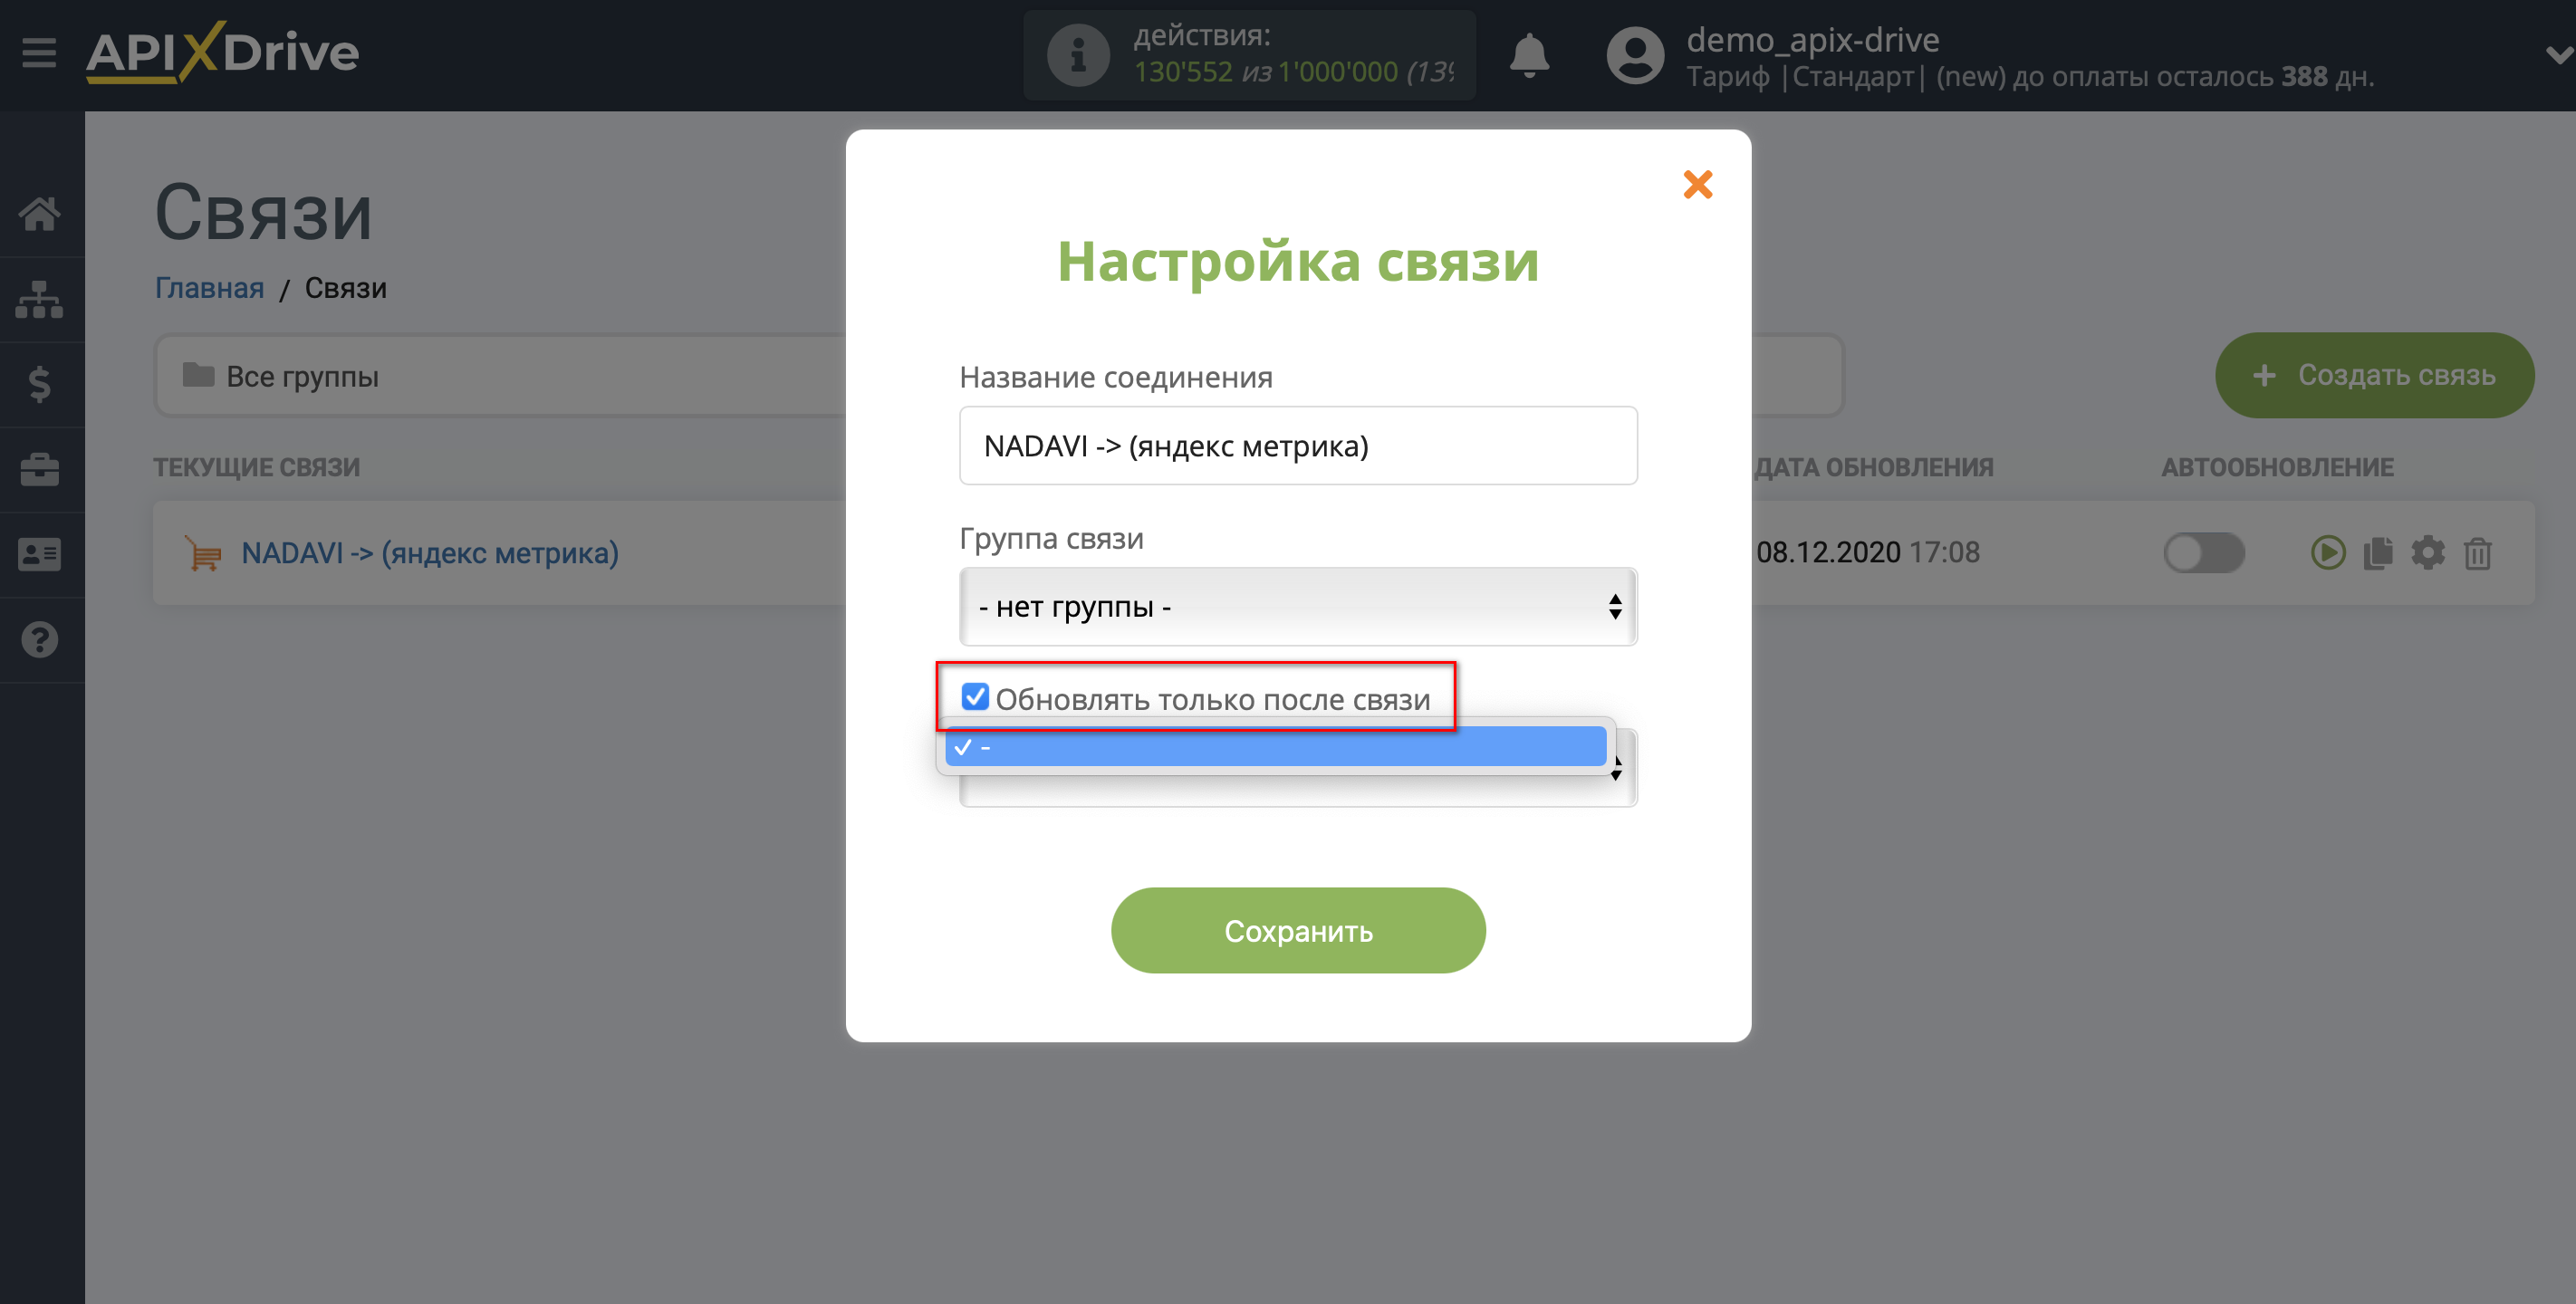 Импорт данных по расходам из Nadavi в Яндекс.Метрику | Приоритет обновления